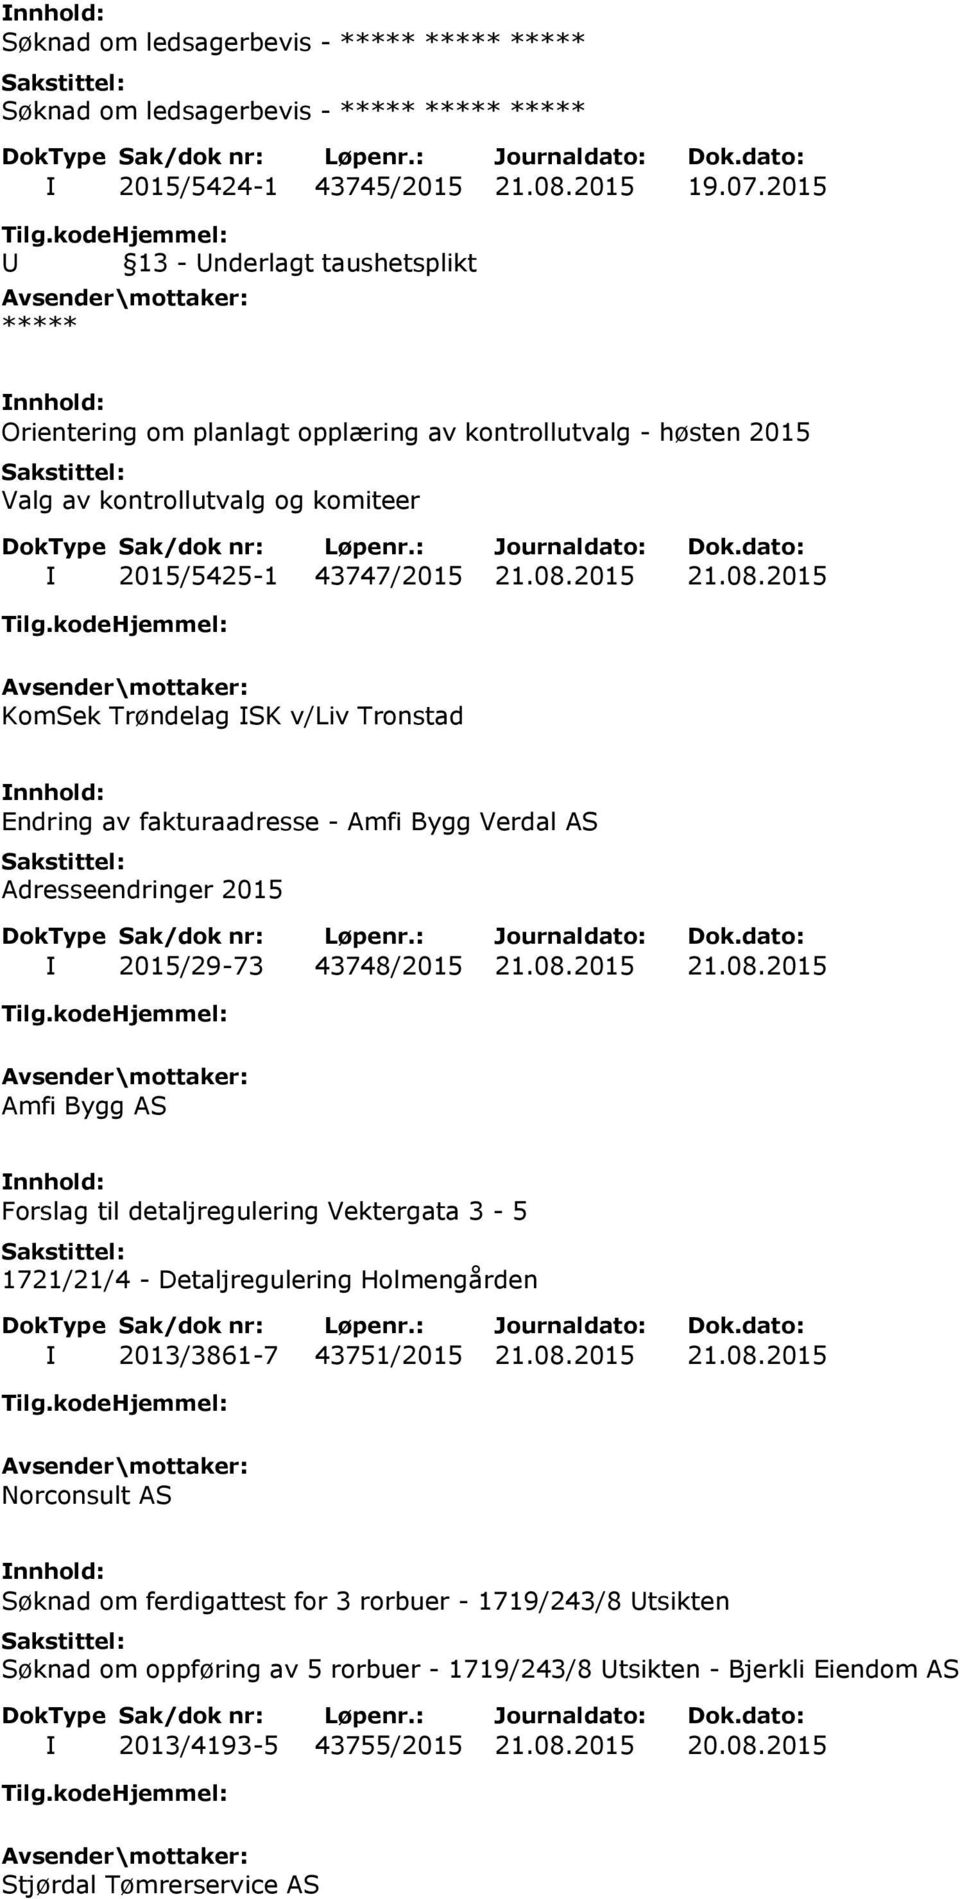 2015 21.08.2015 KomSek Trøndelag ISK v/liv Tronstad Endring av fakturaadresse - Amfi Bygg Verdal AS Adresseendringer 2015 I 2015/29-73 43748/2015 21.08.2015 21.08.2015 Amfi Bygg AS Forslag til detaljregulering Vektergata 3-5 1721/21/4 - Detaljregulering Holmengården I 2013/3861-7 43751/2015 21.